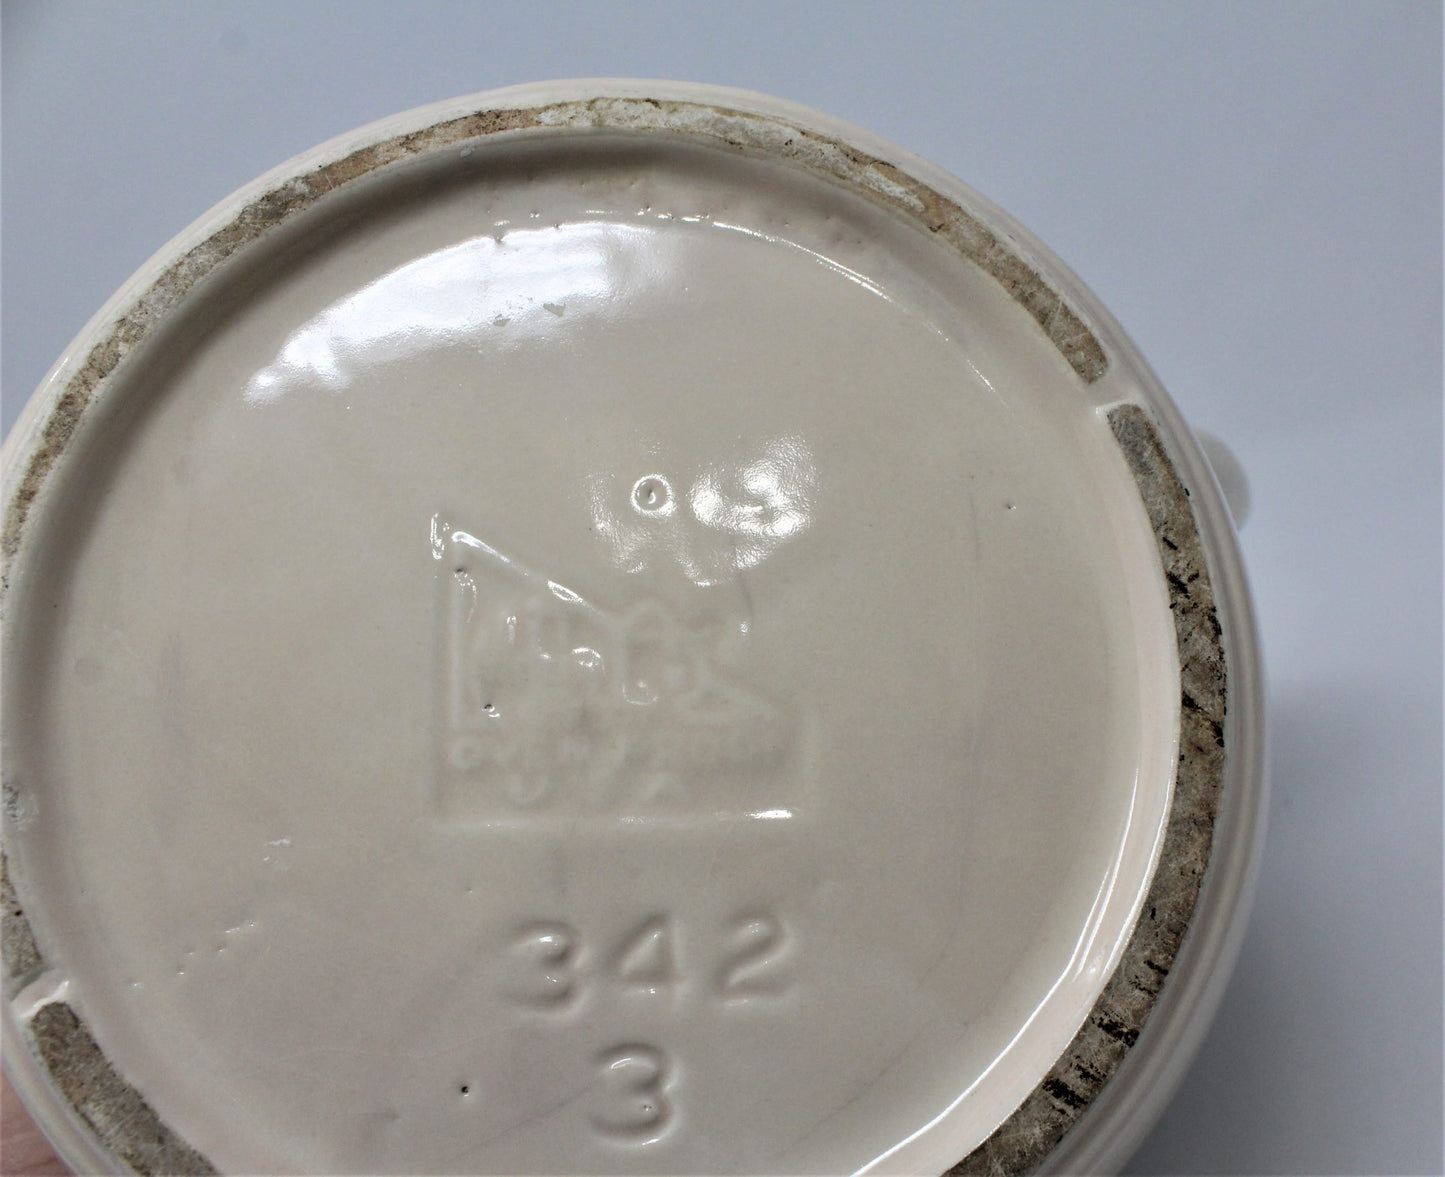 Crock / Bean Pot, McCoy Pottery Brown Tan #342 No Lid, 3 Qt, Vintage